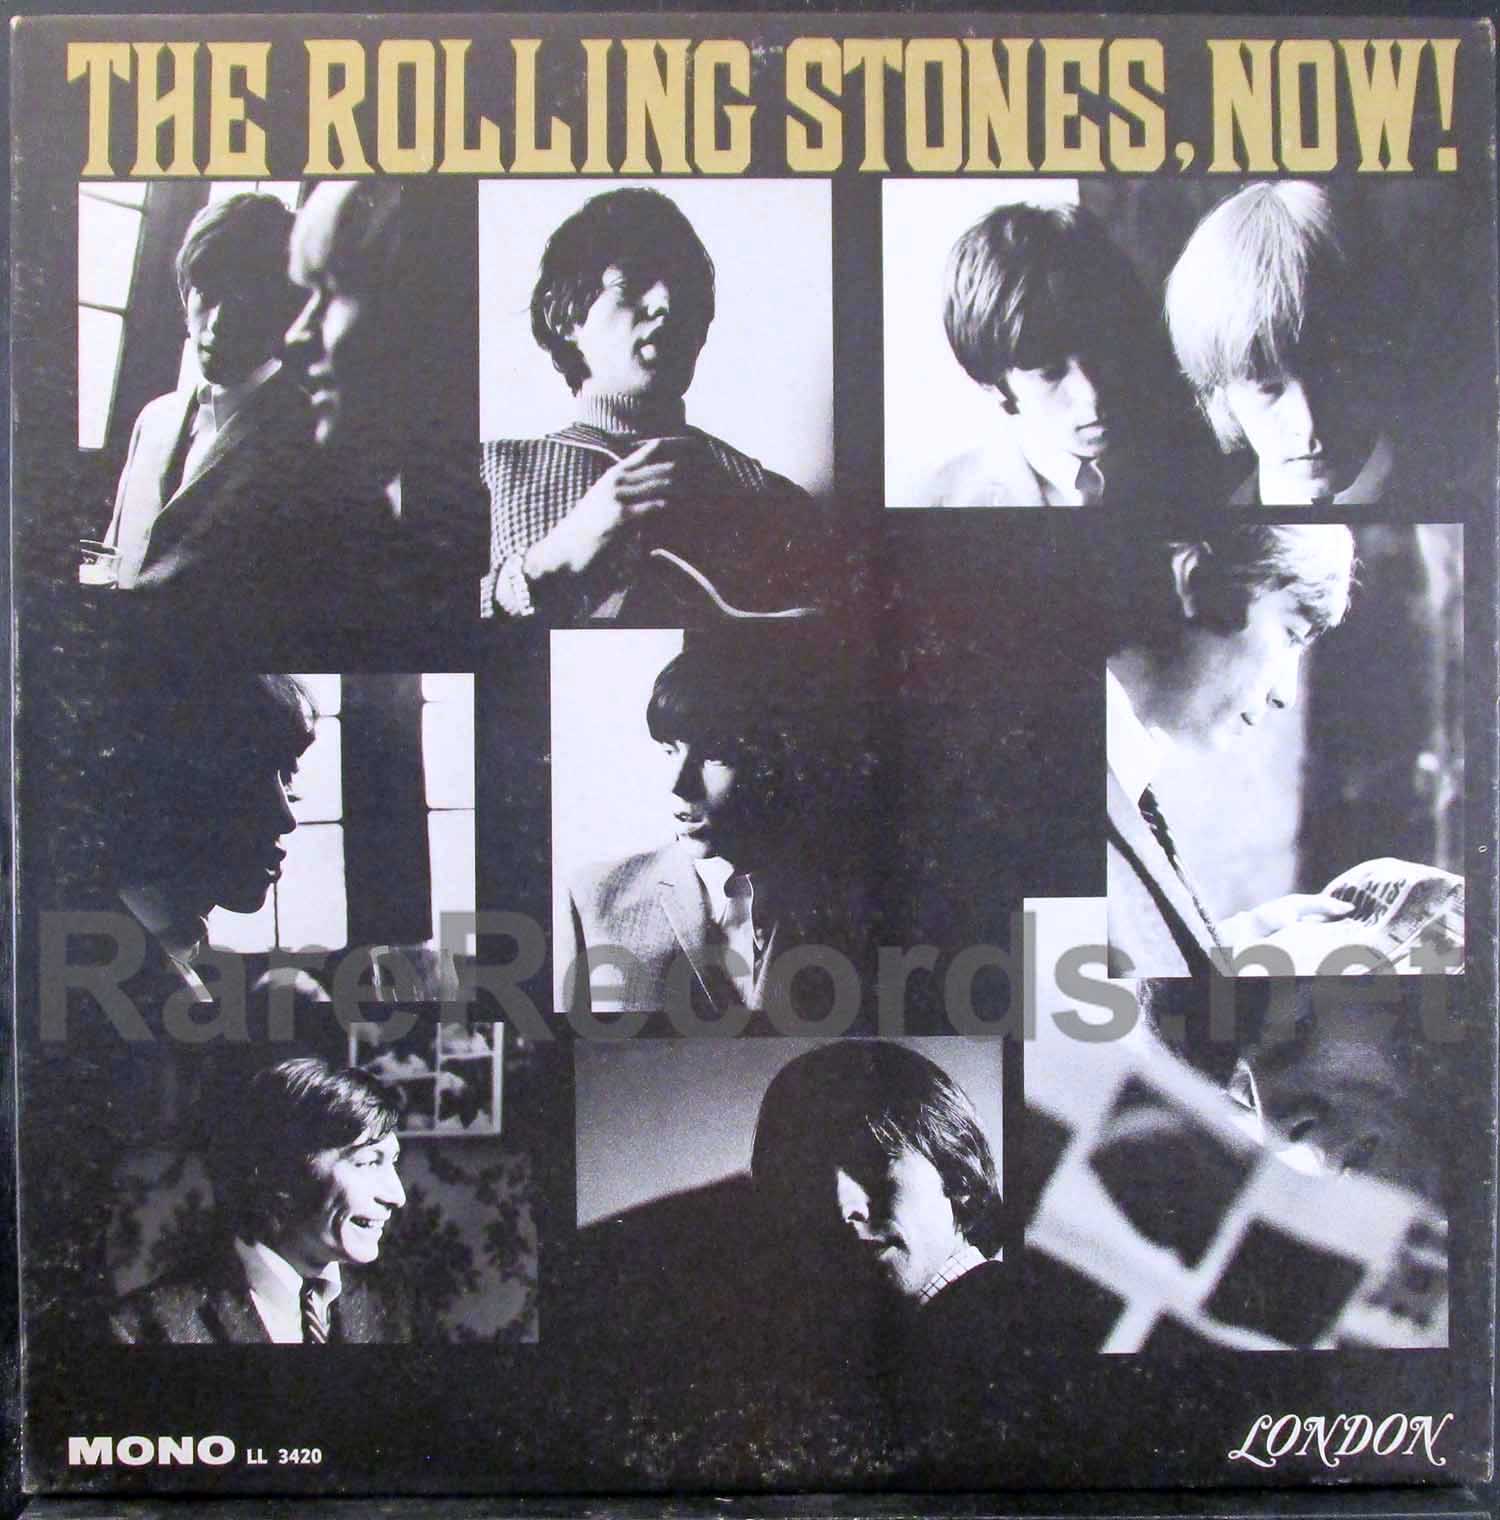 rolling stones - now! sealed u.s. mono lp